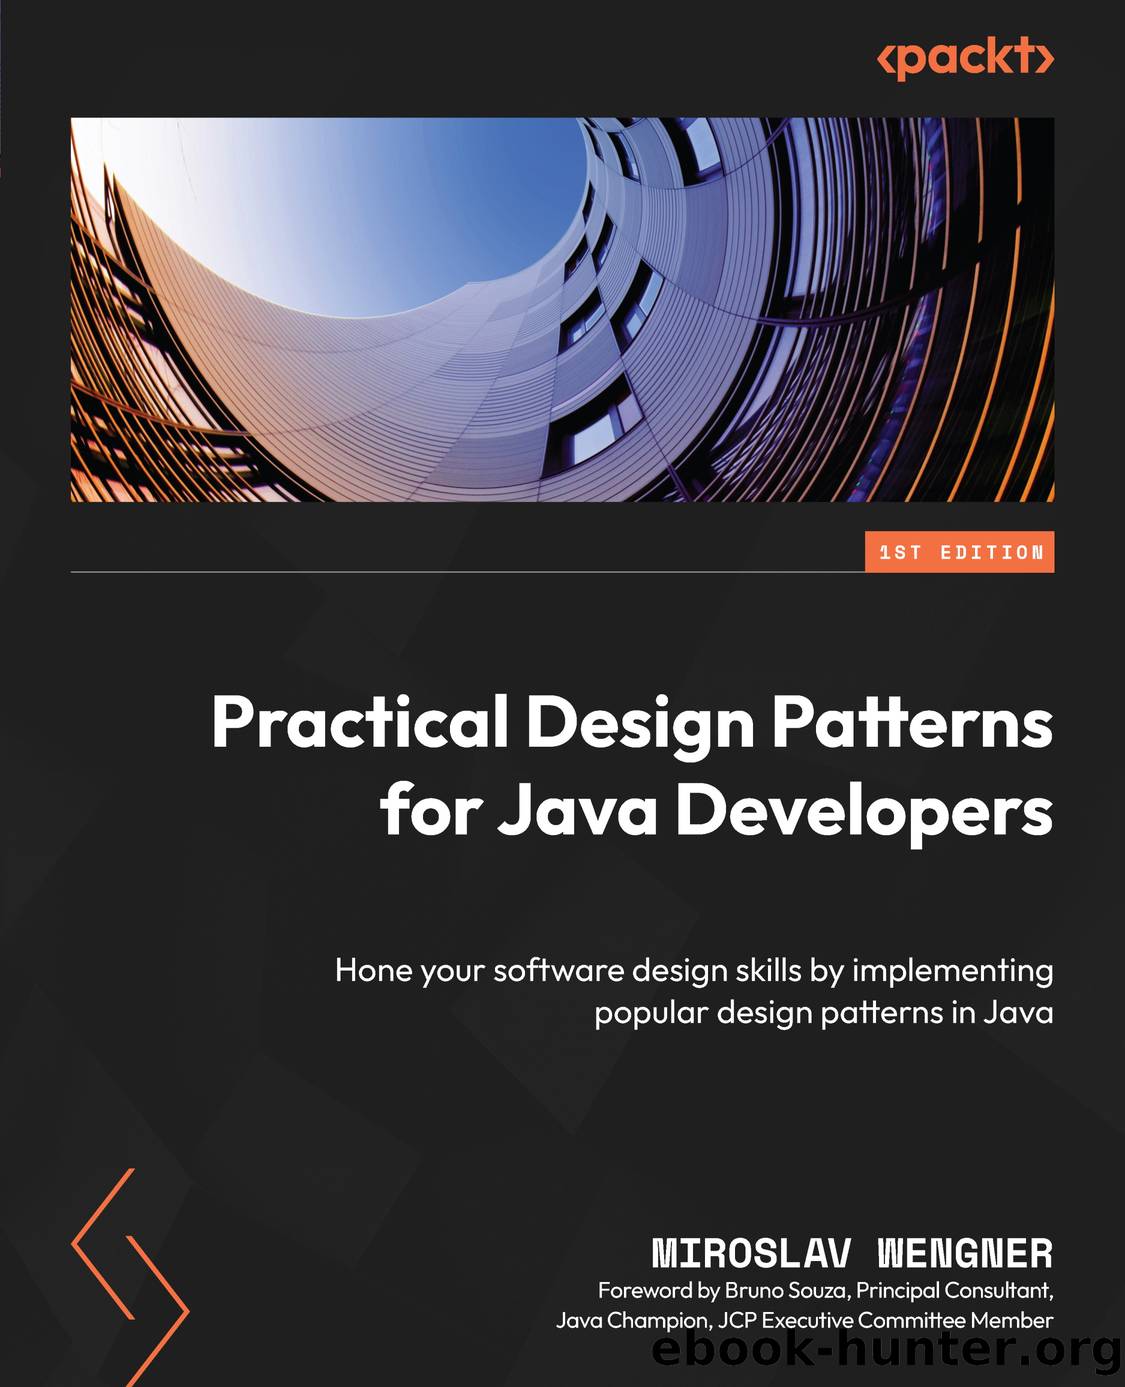 Practical Design Patterns for Java Developers by Miroslav Wengner